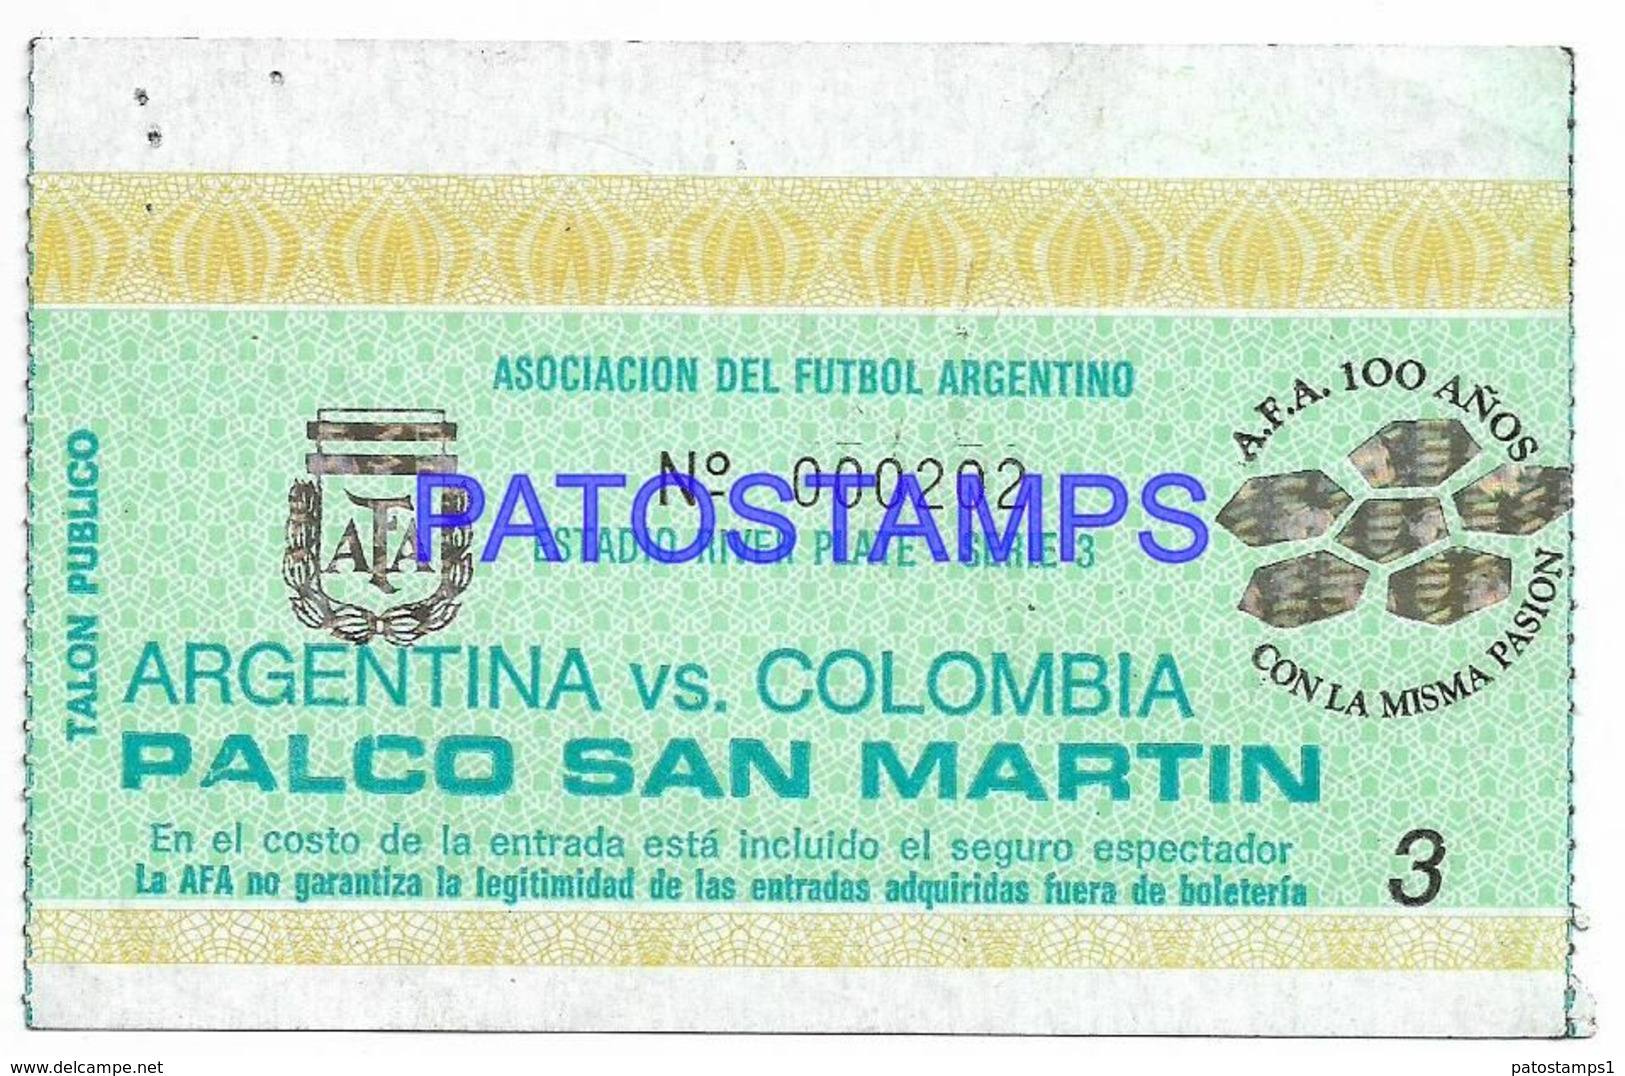 142382 ARGENTINA VS COLOMBIA SPORTS SOCCER FUTBOL ESTADIO RIVER PLATE TICKET ENTRADA NO POSTAL POSTCARD - Fútbol